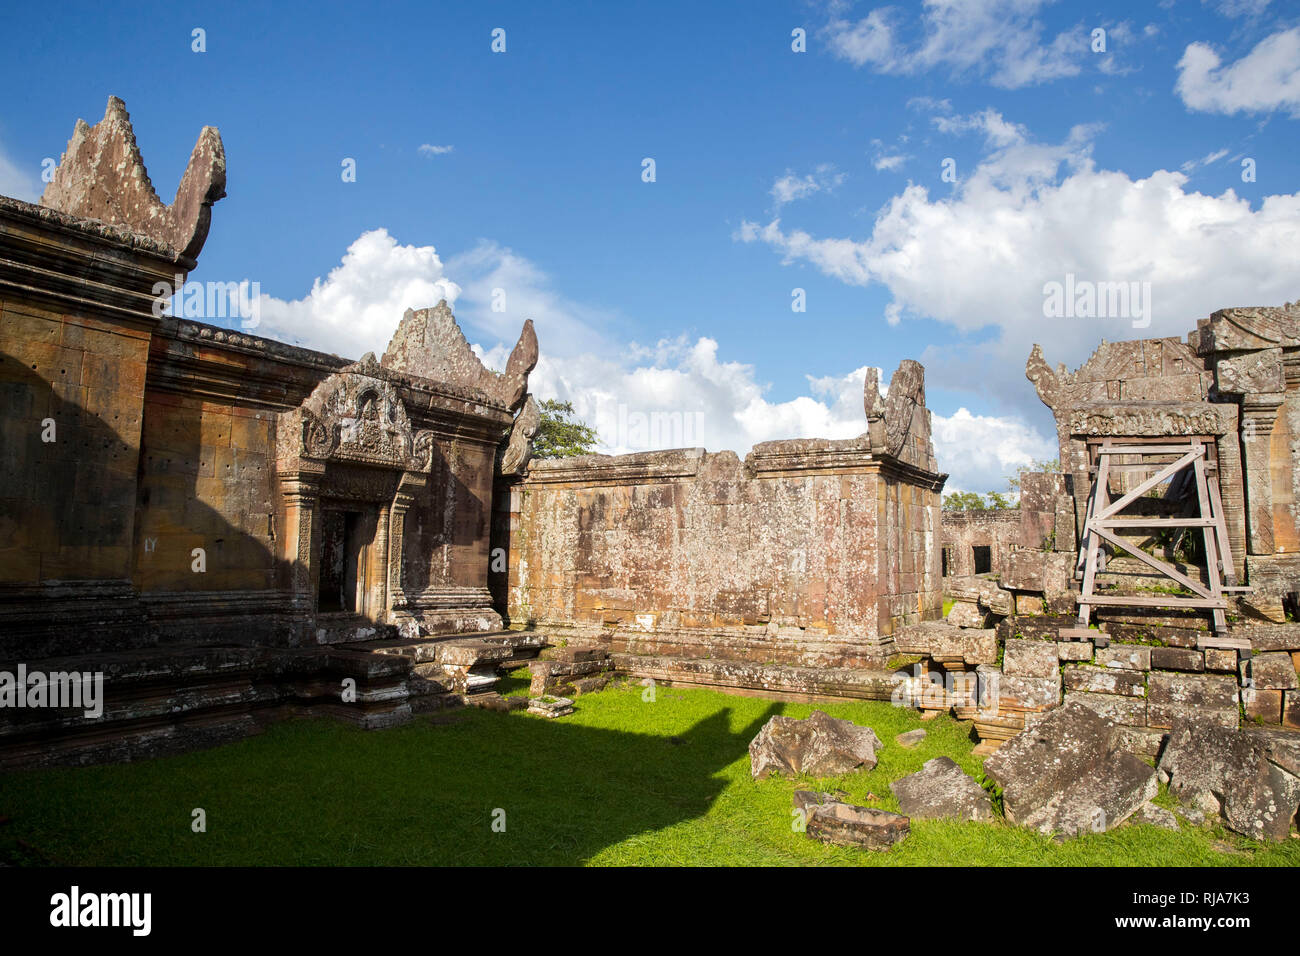 Tempel Preah Vihear, ein Tempel auf einem Bergplateau, ehemals thailändisches Staatsgebiet, gehört heute zu Kambodscha, der Tempel wird von Militär essere Foto Stock